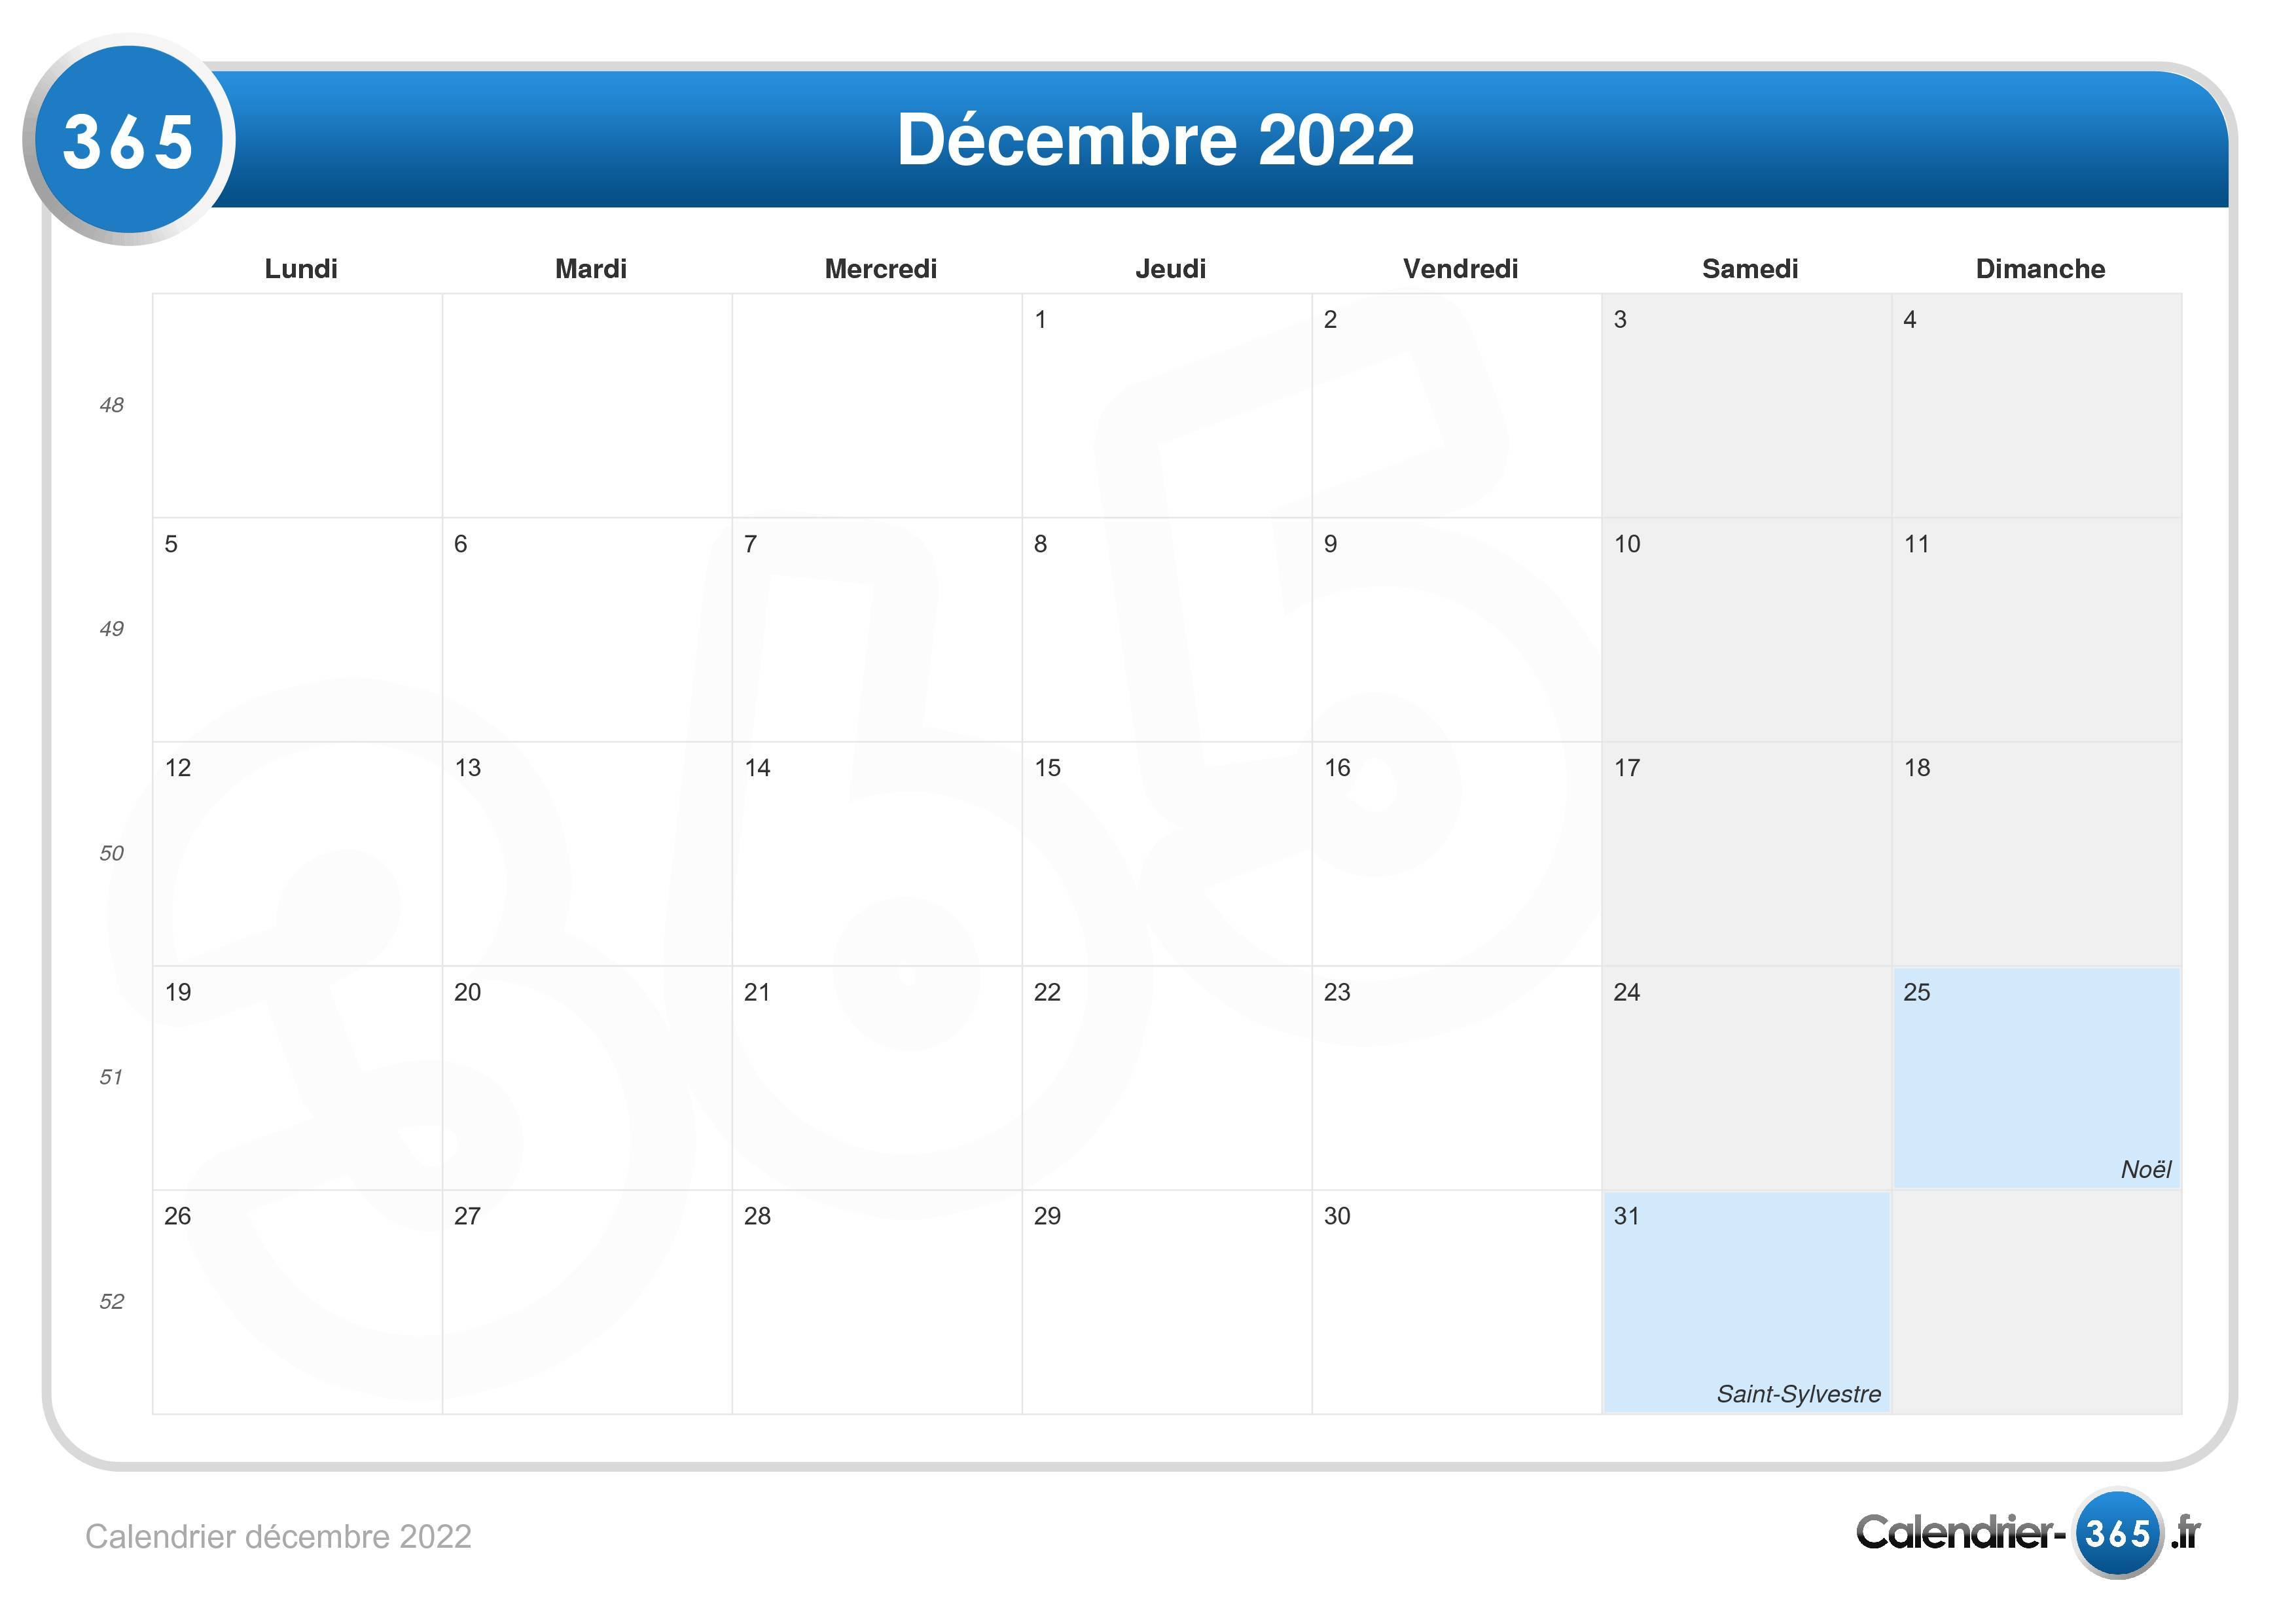 Calendrier Decembre 2022 Calendrier décembre 2022